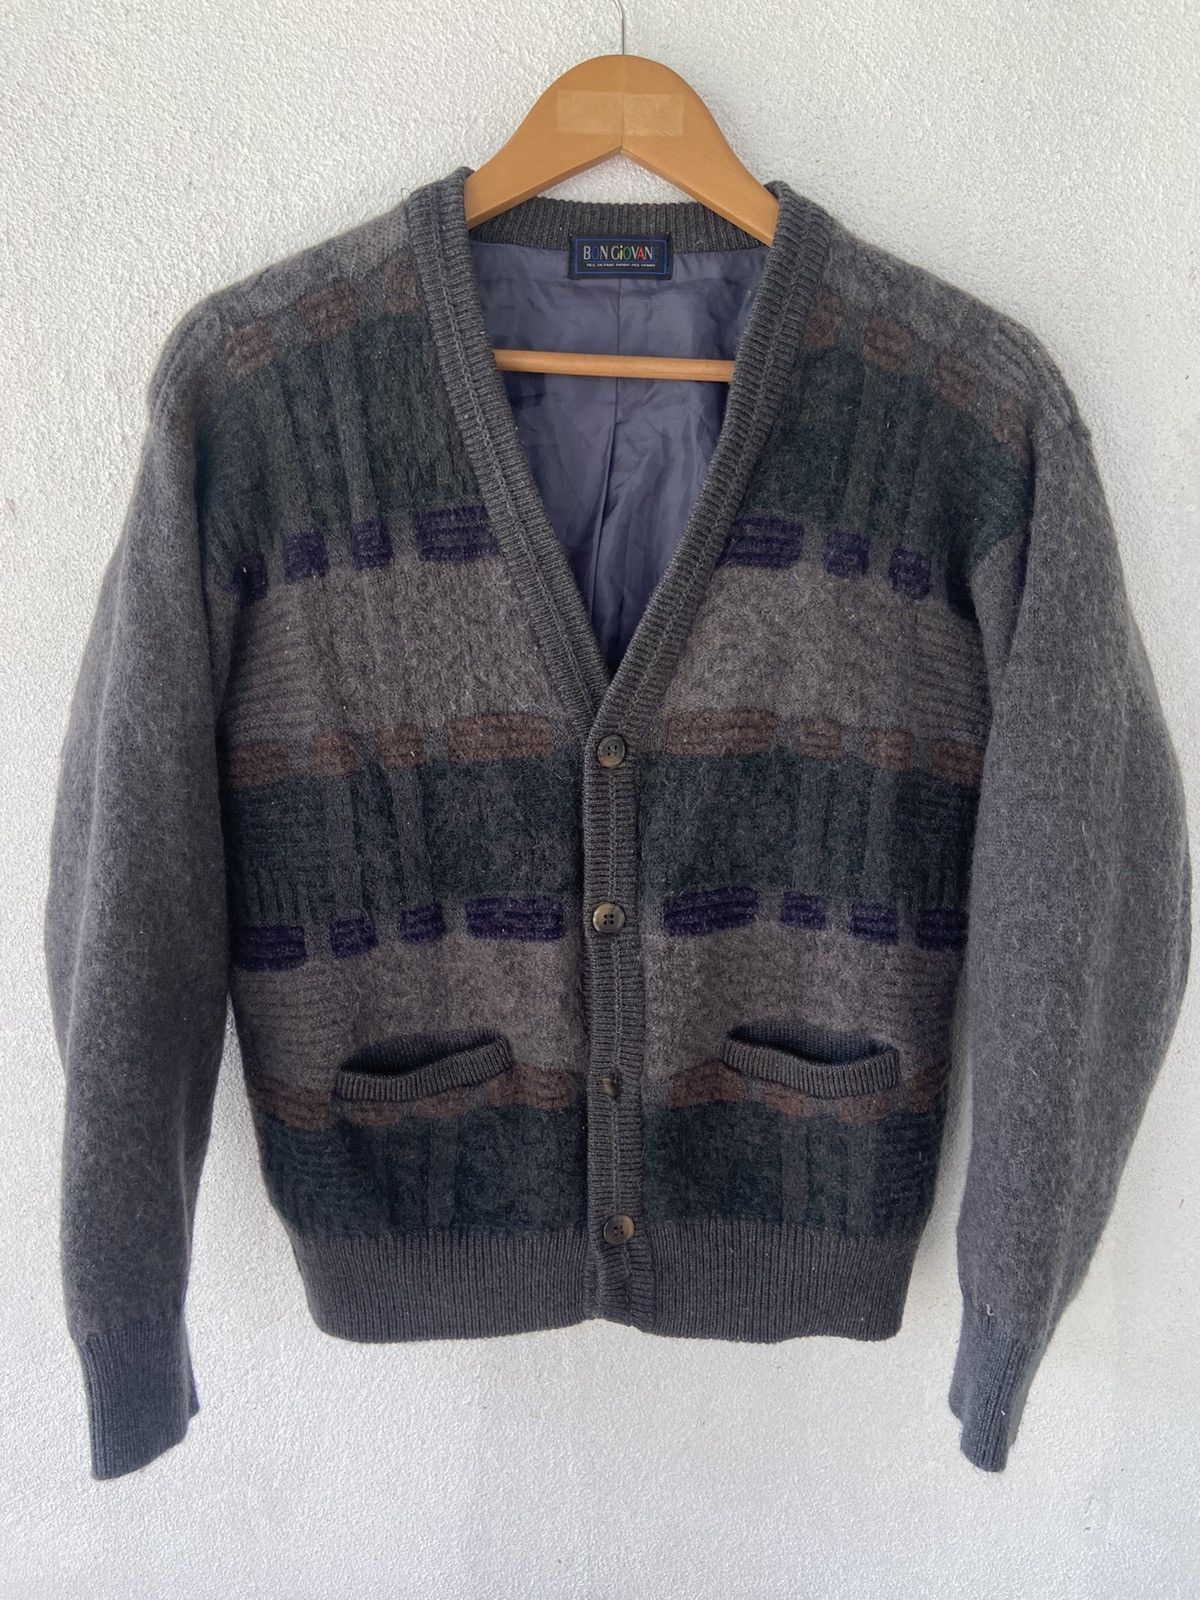 Vintage Vintage Bon Giovane Wool Cardigan | Grailed